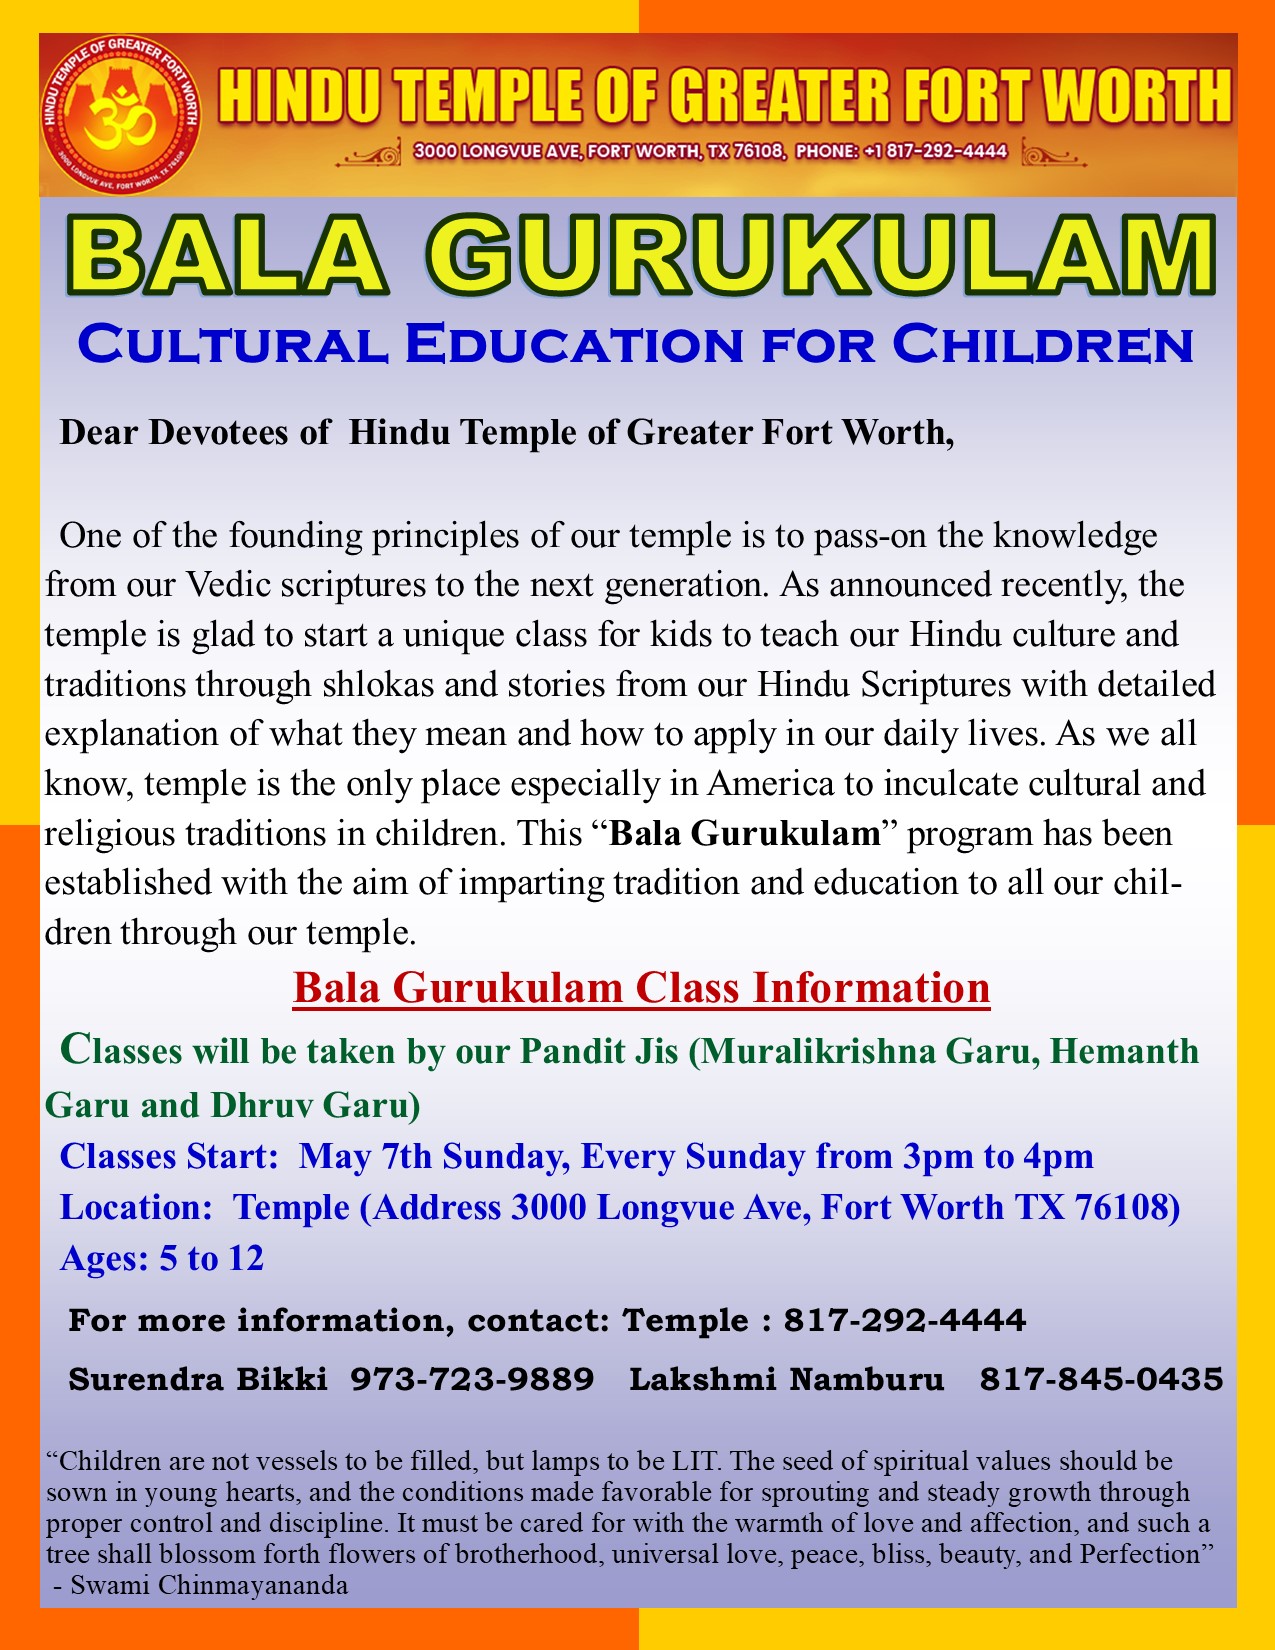 Bala Gurukulam